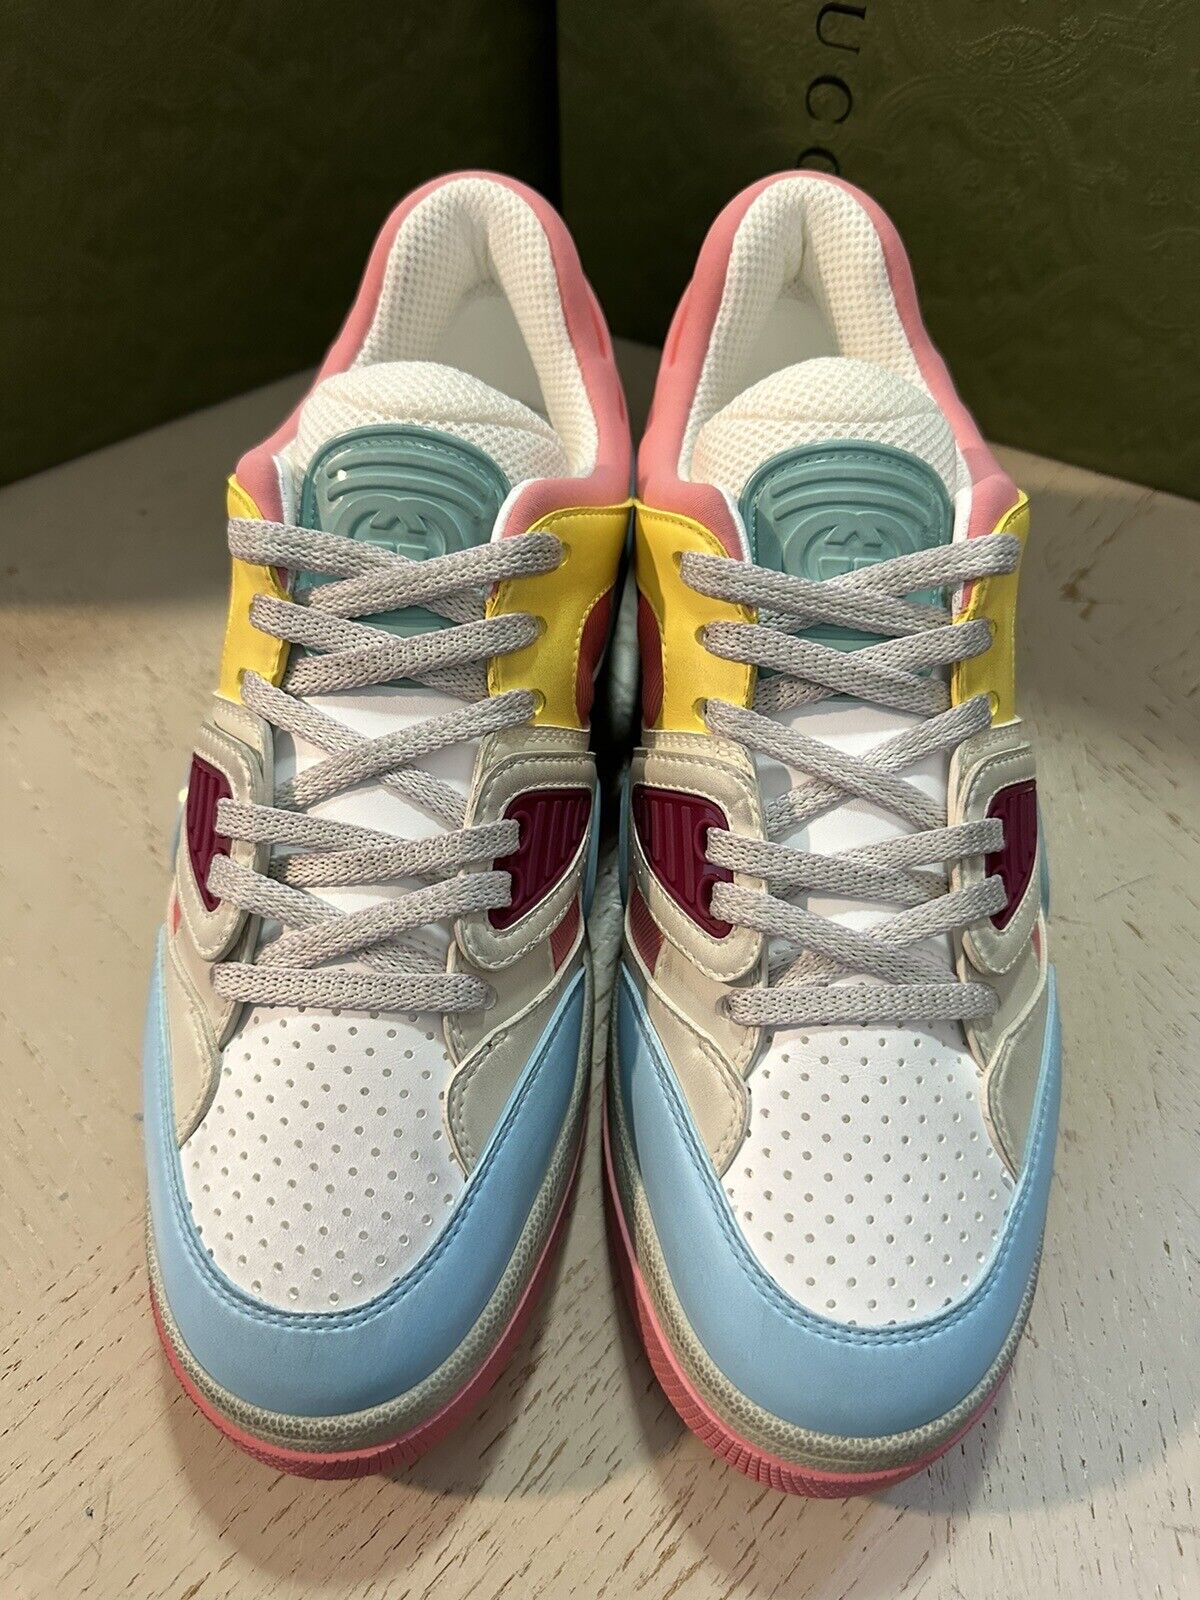 New $950 Gucci Women Demetra Basket Sneakers Pink/Blue/Multi 8.5 US/38.5 700291